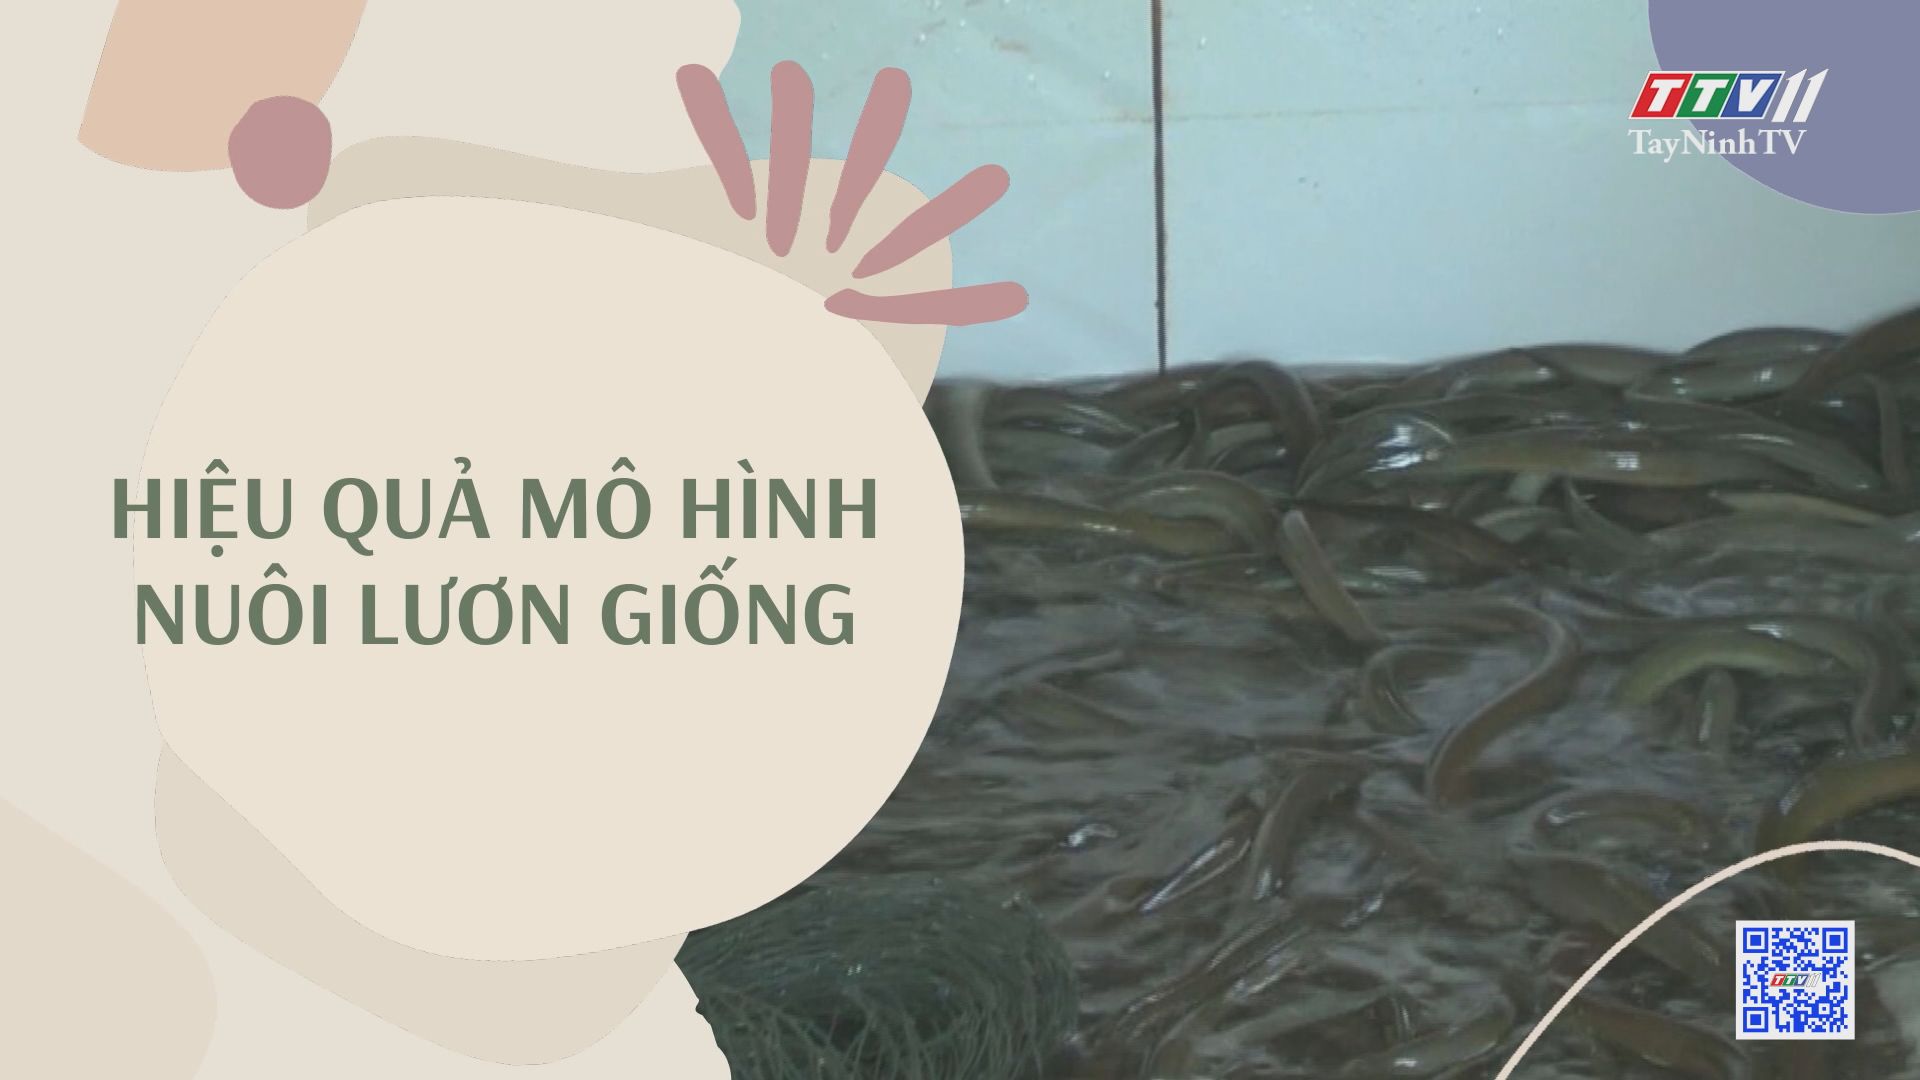 Hiệu quả mô hình nuôi lươn giống | NÔNG NGHIỆP TÂY NINH | TayNinhTV